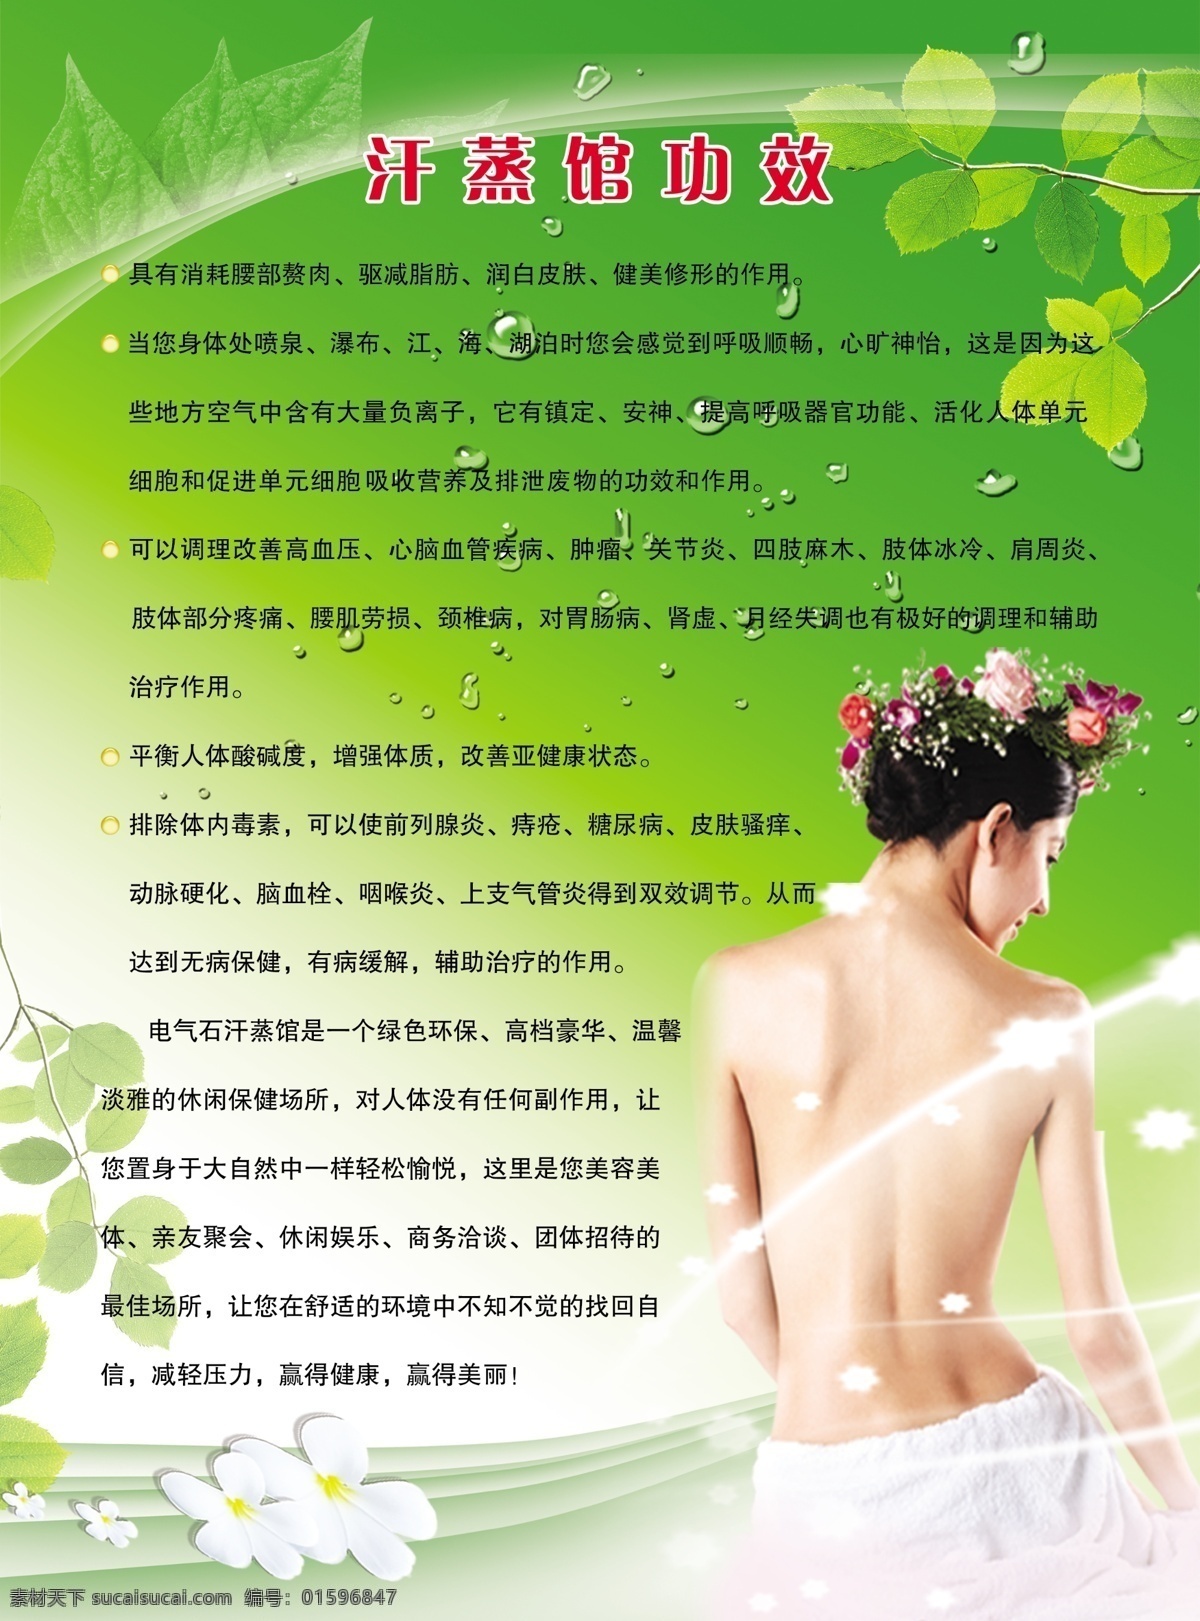 汗蒸馆功效 洗浴 spa 绿色展板 汗蒸海报 广告设计模板 源文件